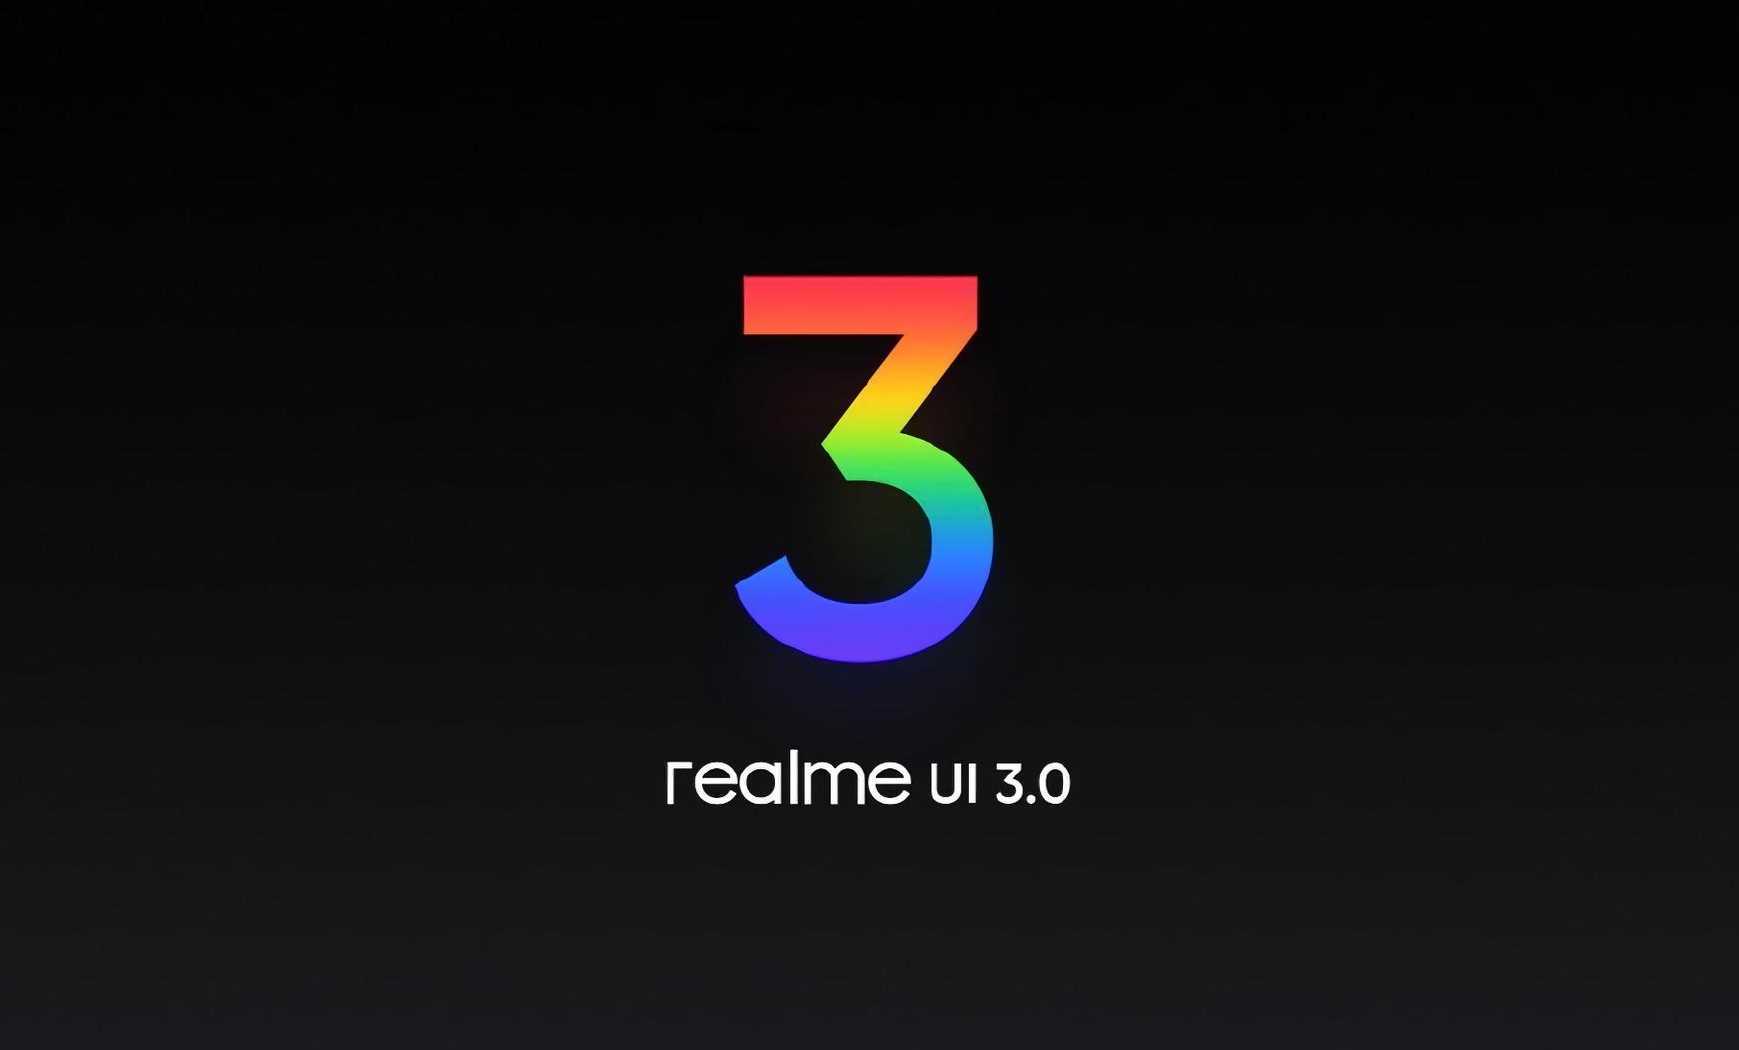 22 Realme-Smartphones erhalten Realme UI 3.0-Firmware - offizielle Liste veröffentlicht